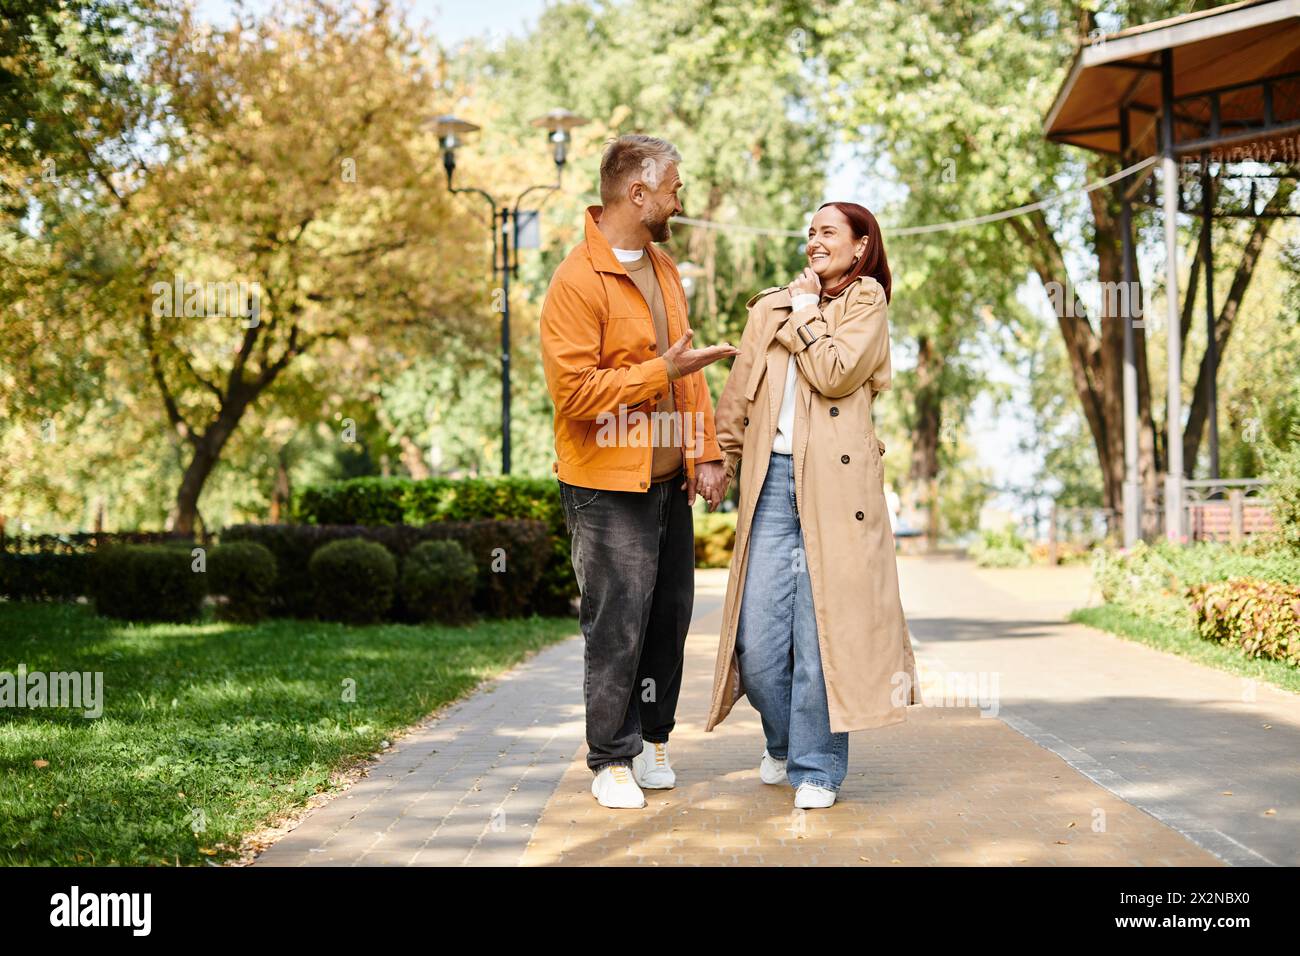 Ein Mann und eine Frau in lässiger Kleidung, die einen Bürgersteig in einem Park hinunterlaufen. Stockfoto